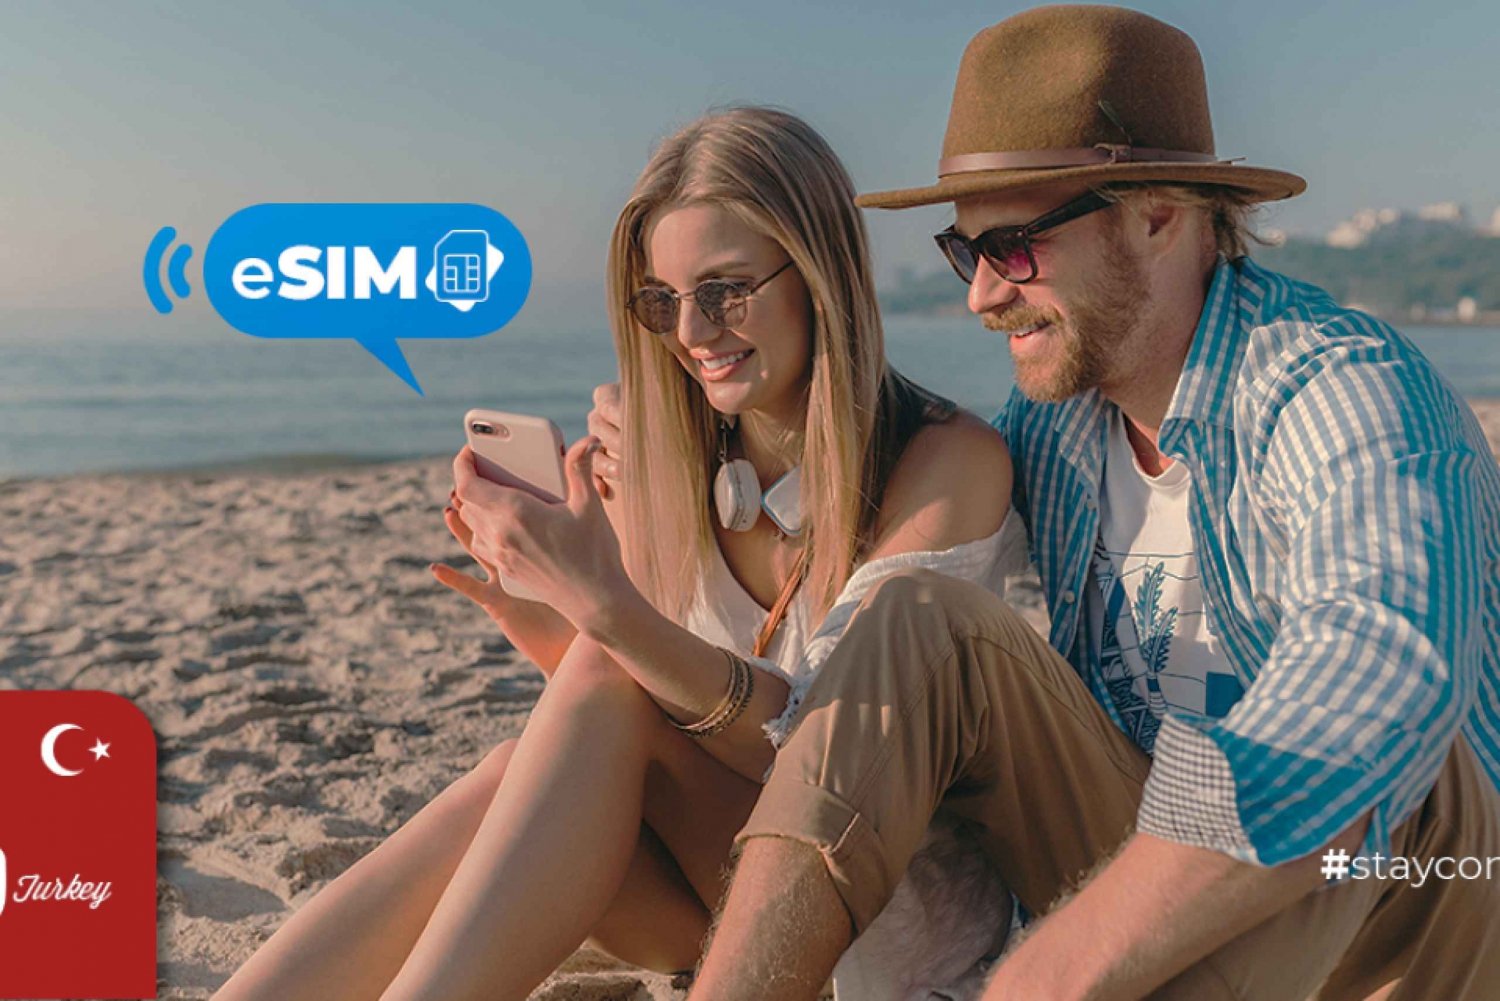 Kalkan / Turcja: Internet w roamingu z mobilną transmisją danych eSIM